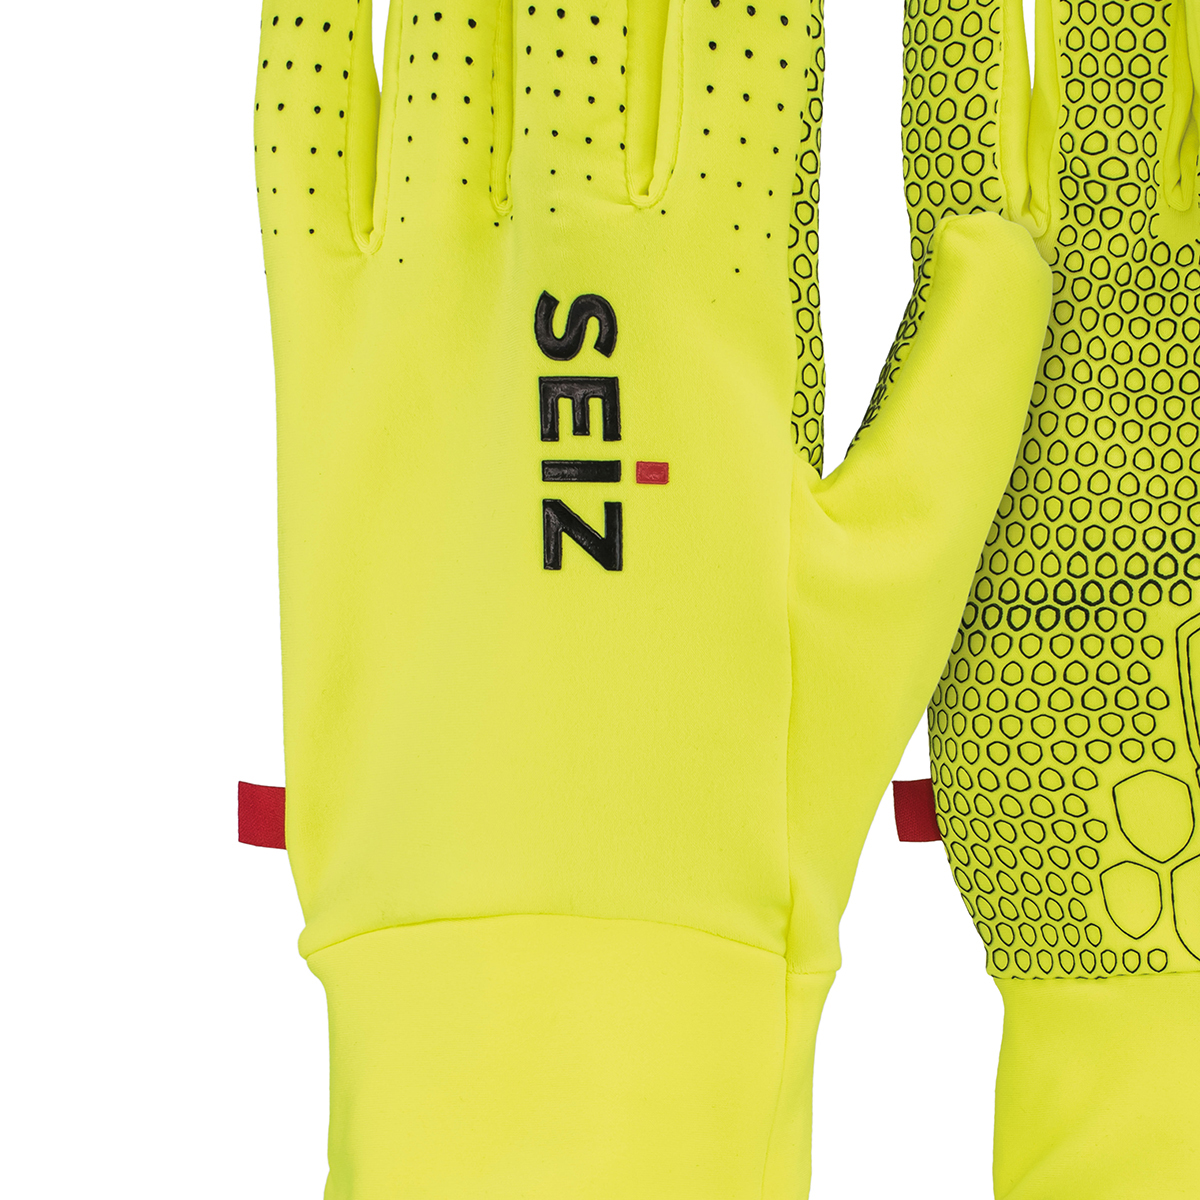 Seiz Handschuhe CHAMPION Unisex 8003 neon gelb